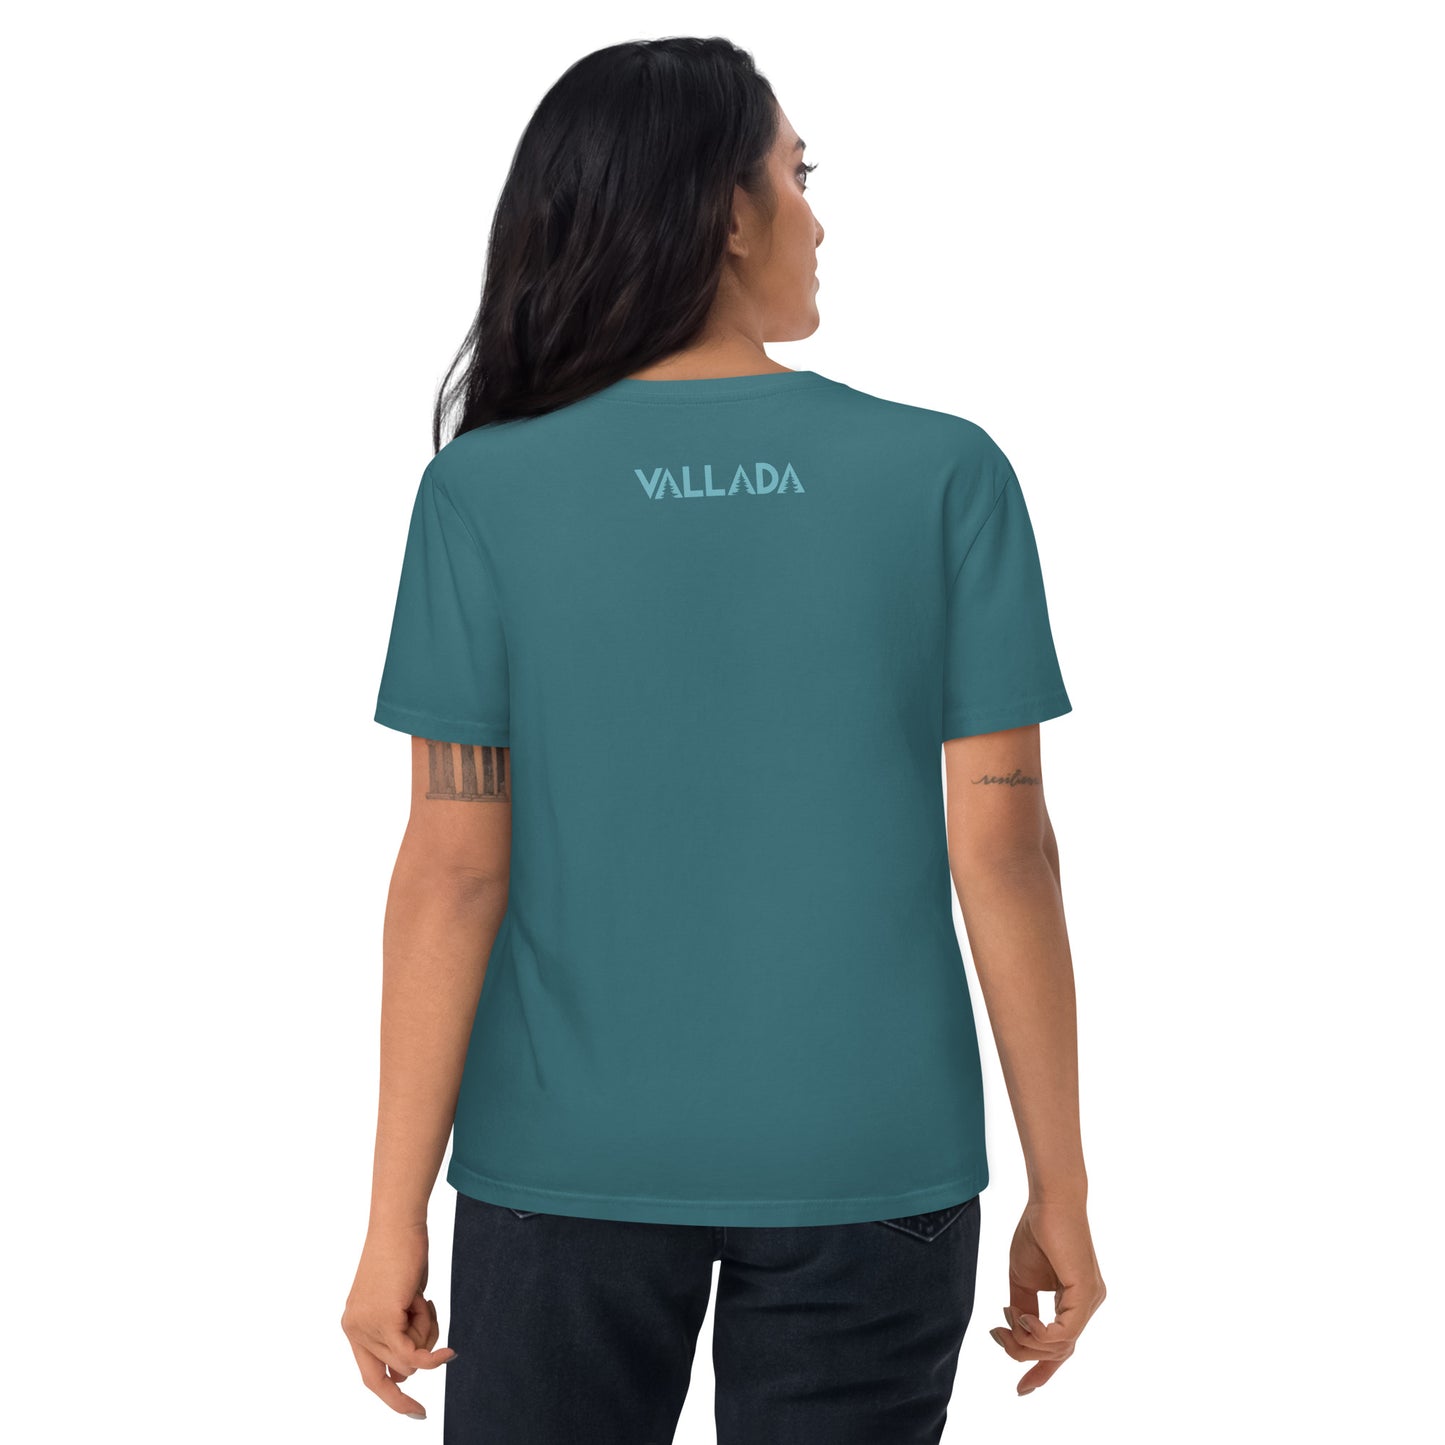 Diese Wanderfreundin trägt Damen T-Shirt in der Farbe Stargazer aus der Säntis-Collection von Vallada. Sie steht mit dem Rücken zur Kamera, so dass wir das Vallada-Logo sehen.